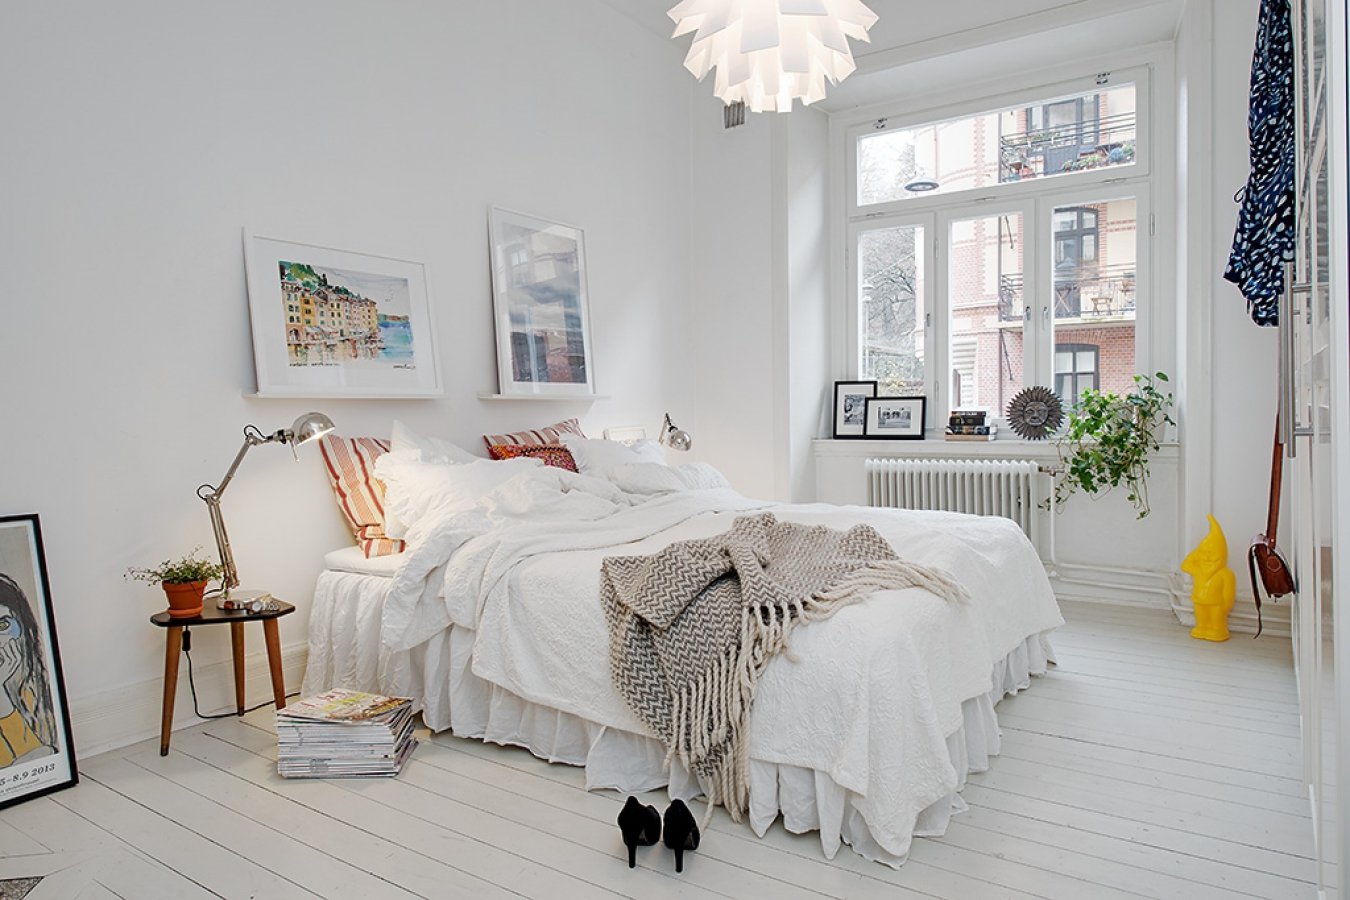 Спальня в скандинавском стиле (72 фото): дизайн интерьера маленькой спальни